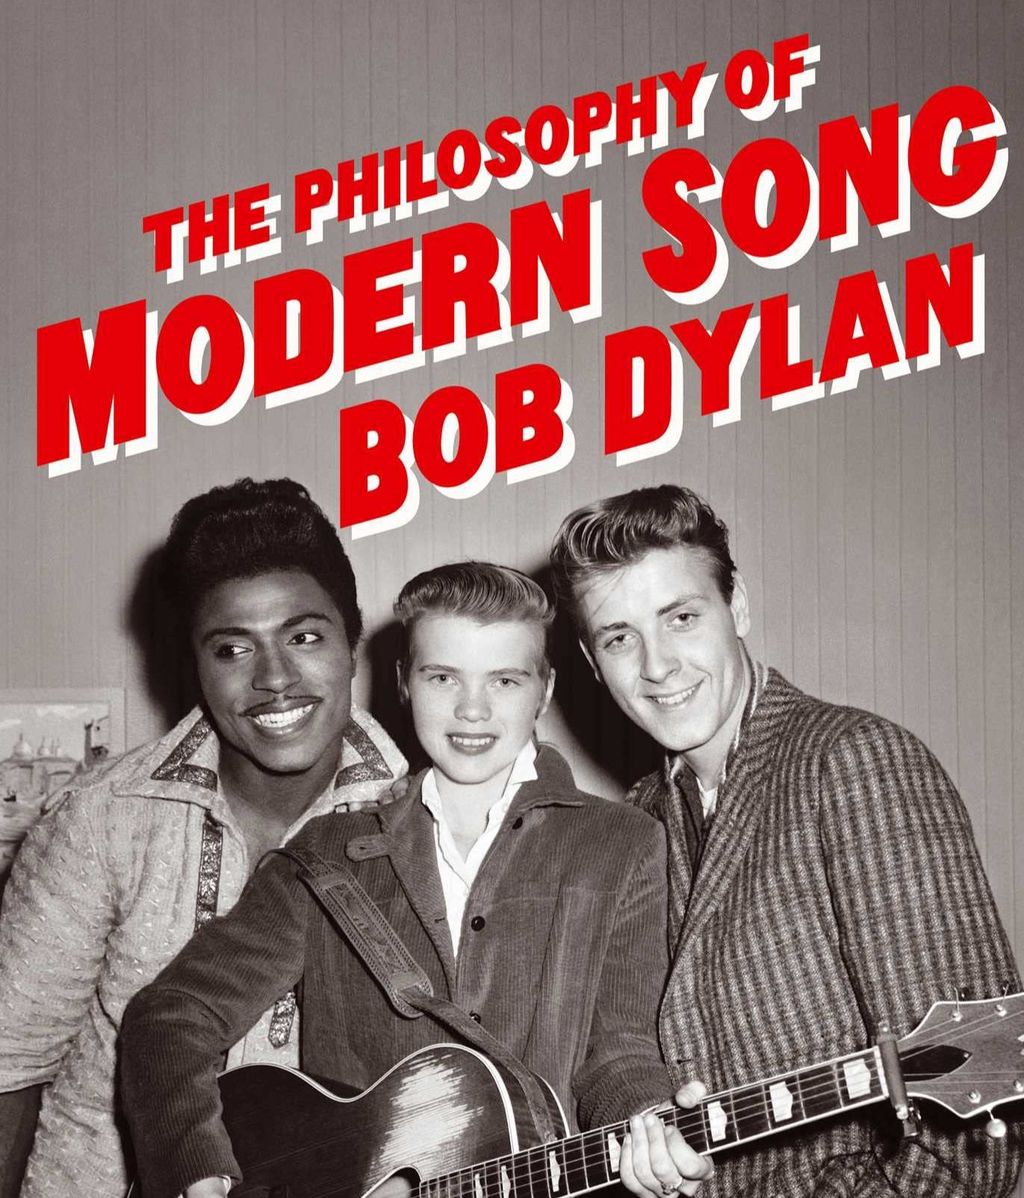 Portada del libro  'The Philosophy of Modern Song' (Anagrama), de Bob Dylan